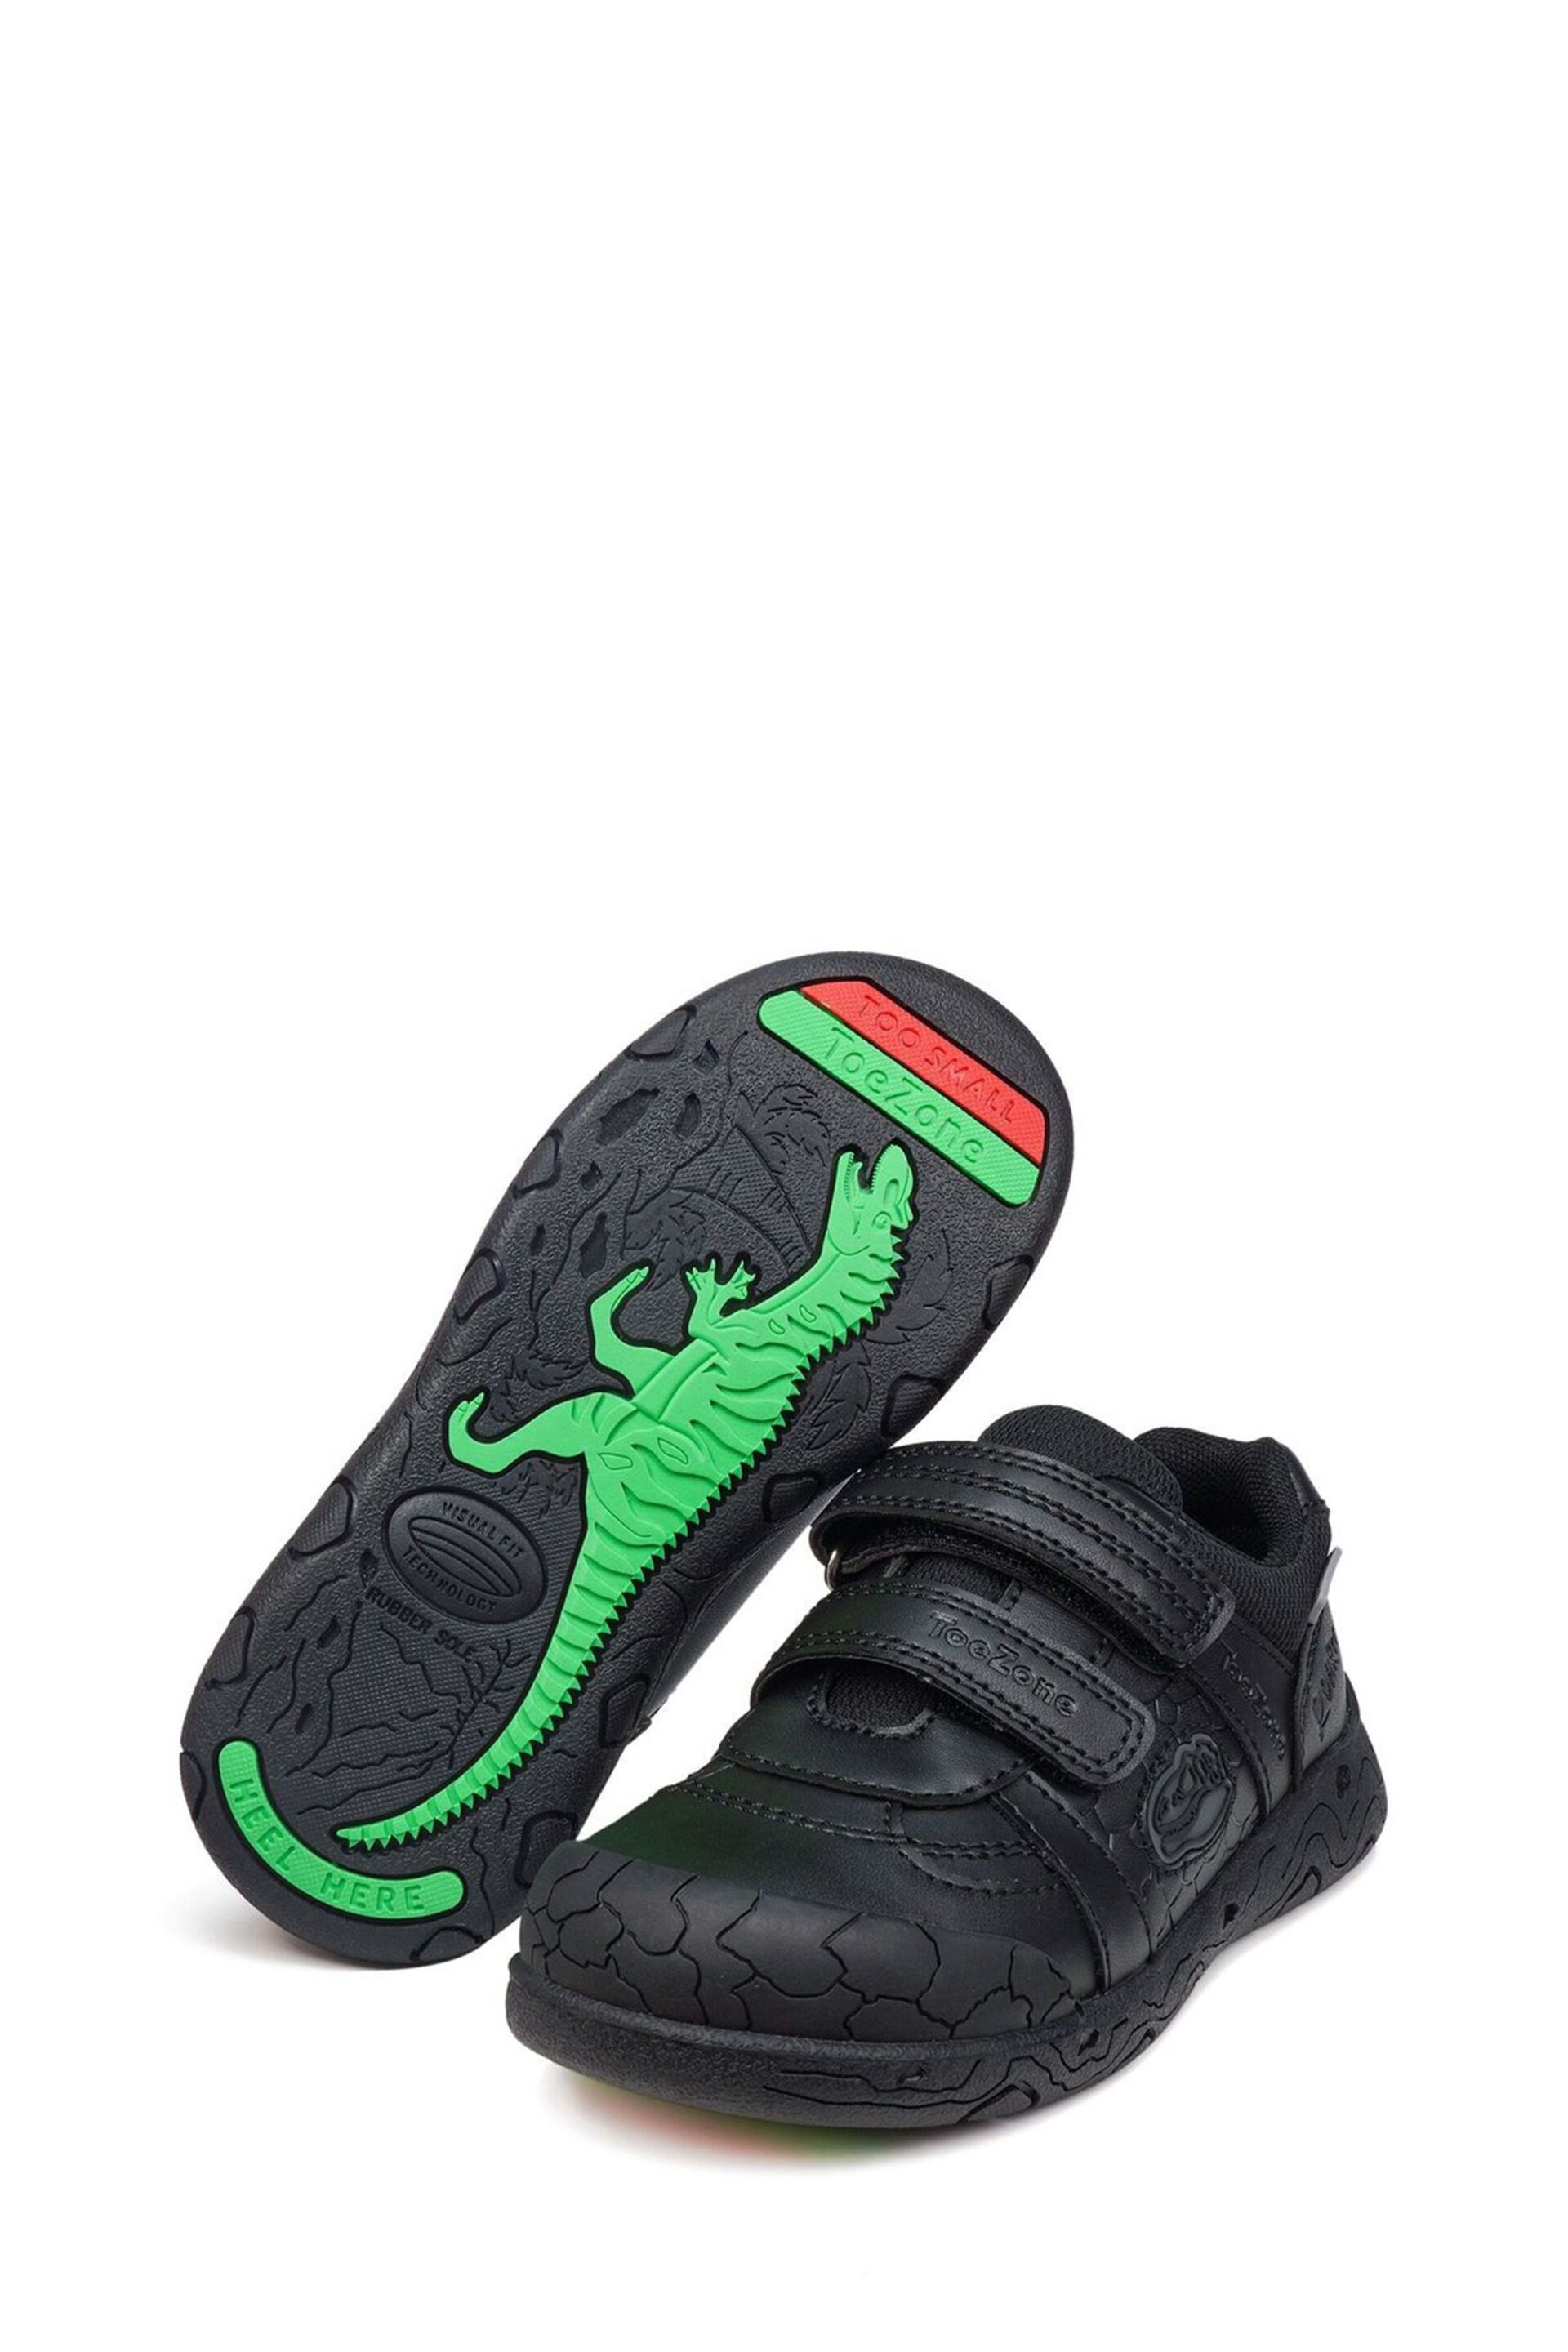 Toezone Chase Black Dinosaur Shoes - Image 2 of 6